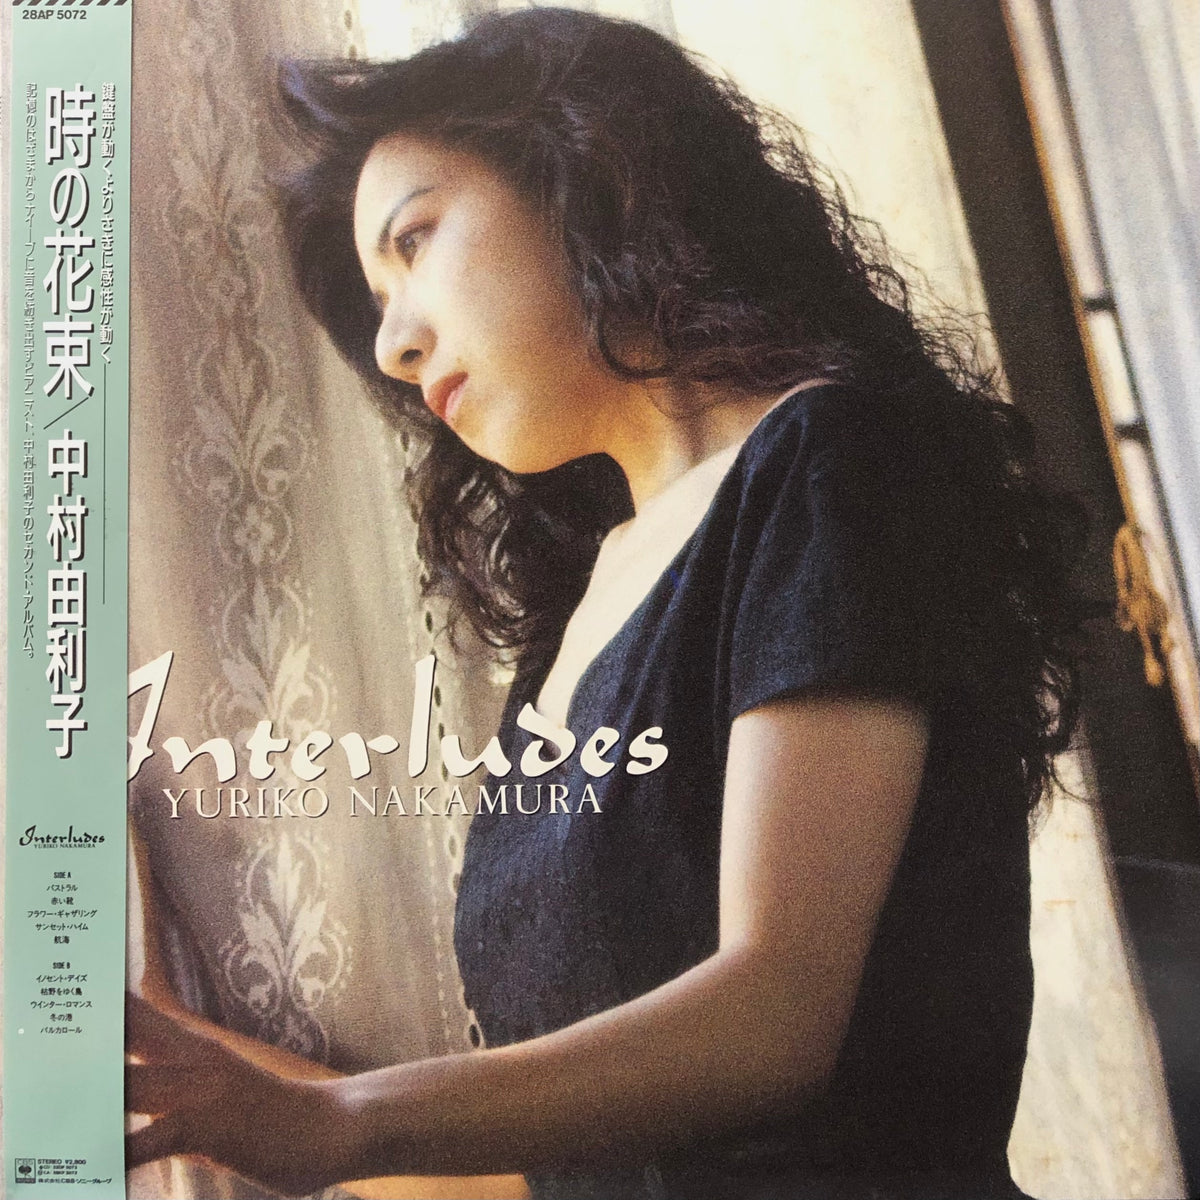 Yuriko Nakamura “Interludes”